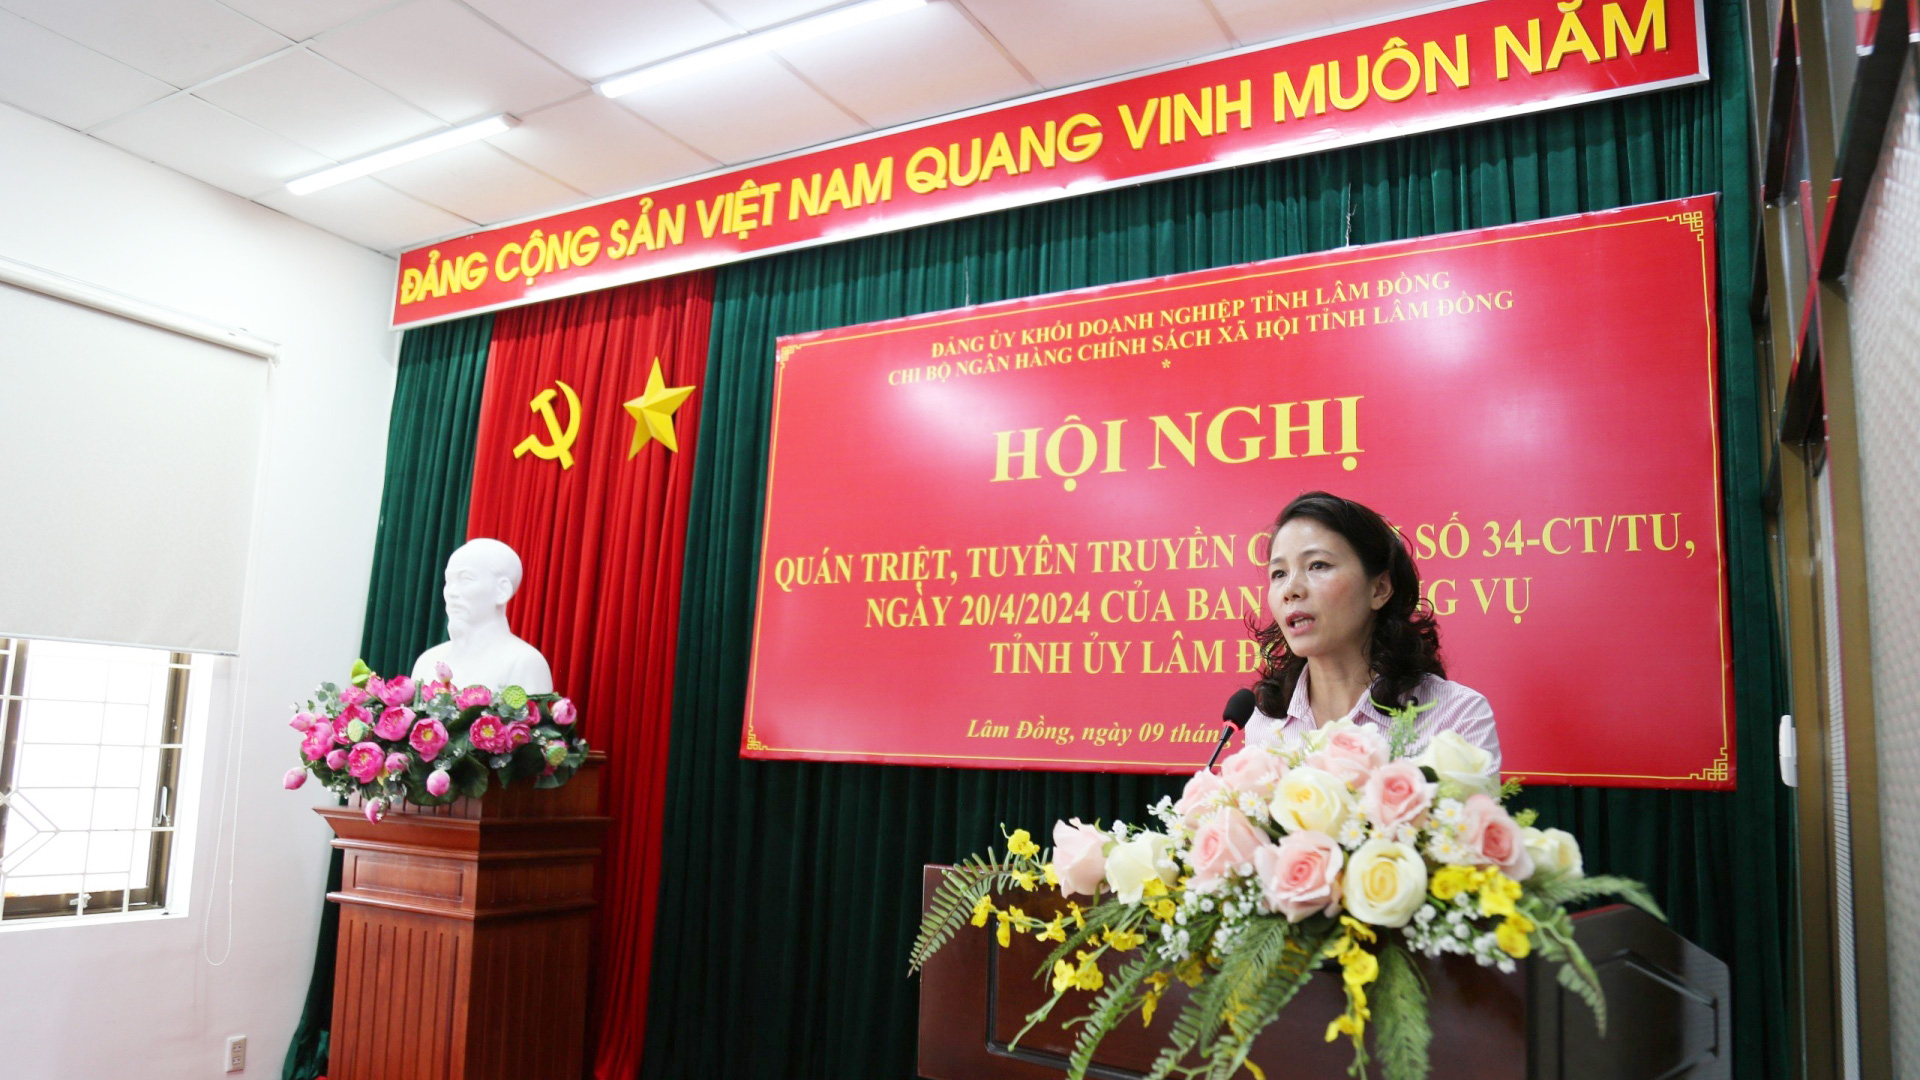 Đồng chí Nguyễn Thị Ngọc Thu - Bí thư chi bộ, Giám đốc chi nhánh NHCSXH tỉnh Lâm Đồng quán triệt nội dung Chỉ thị 34